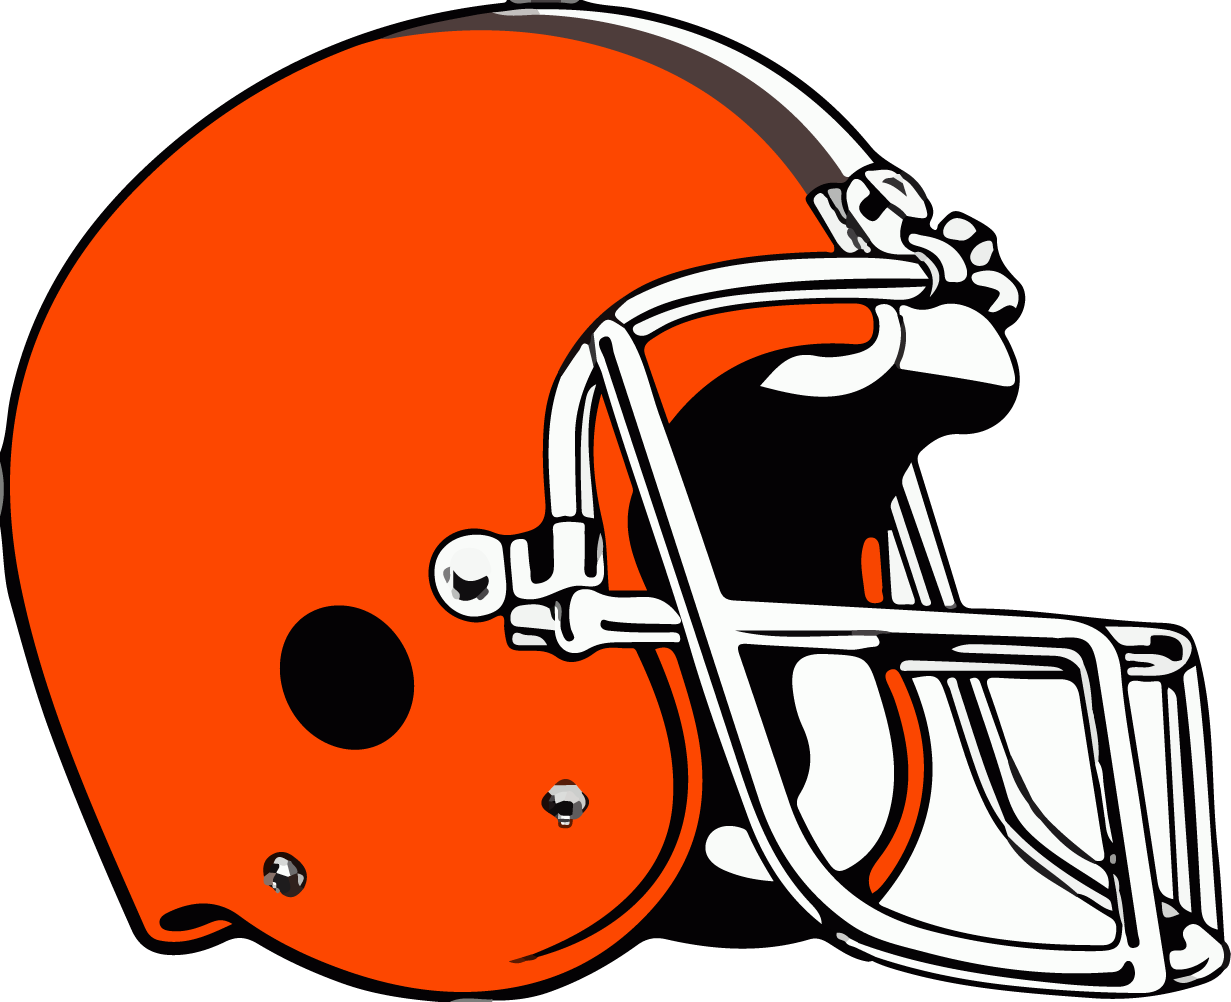 Immagine Trasparente del casco di Cleveland Browns